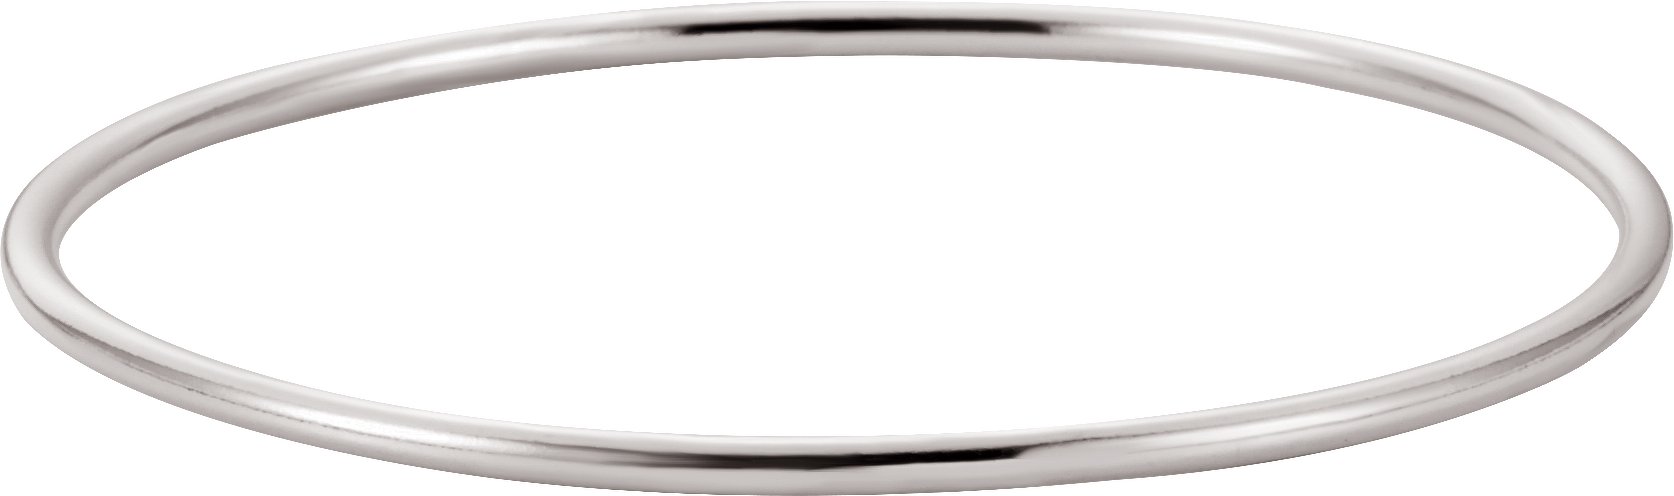 Sterling Silver 2.5 mm Bangle 8" Bracelet